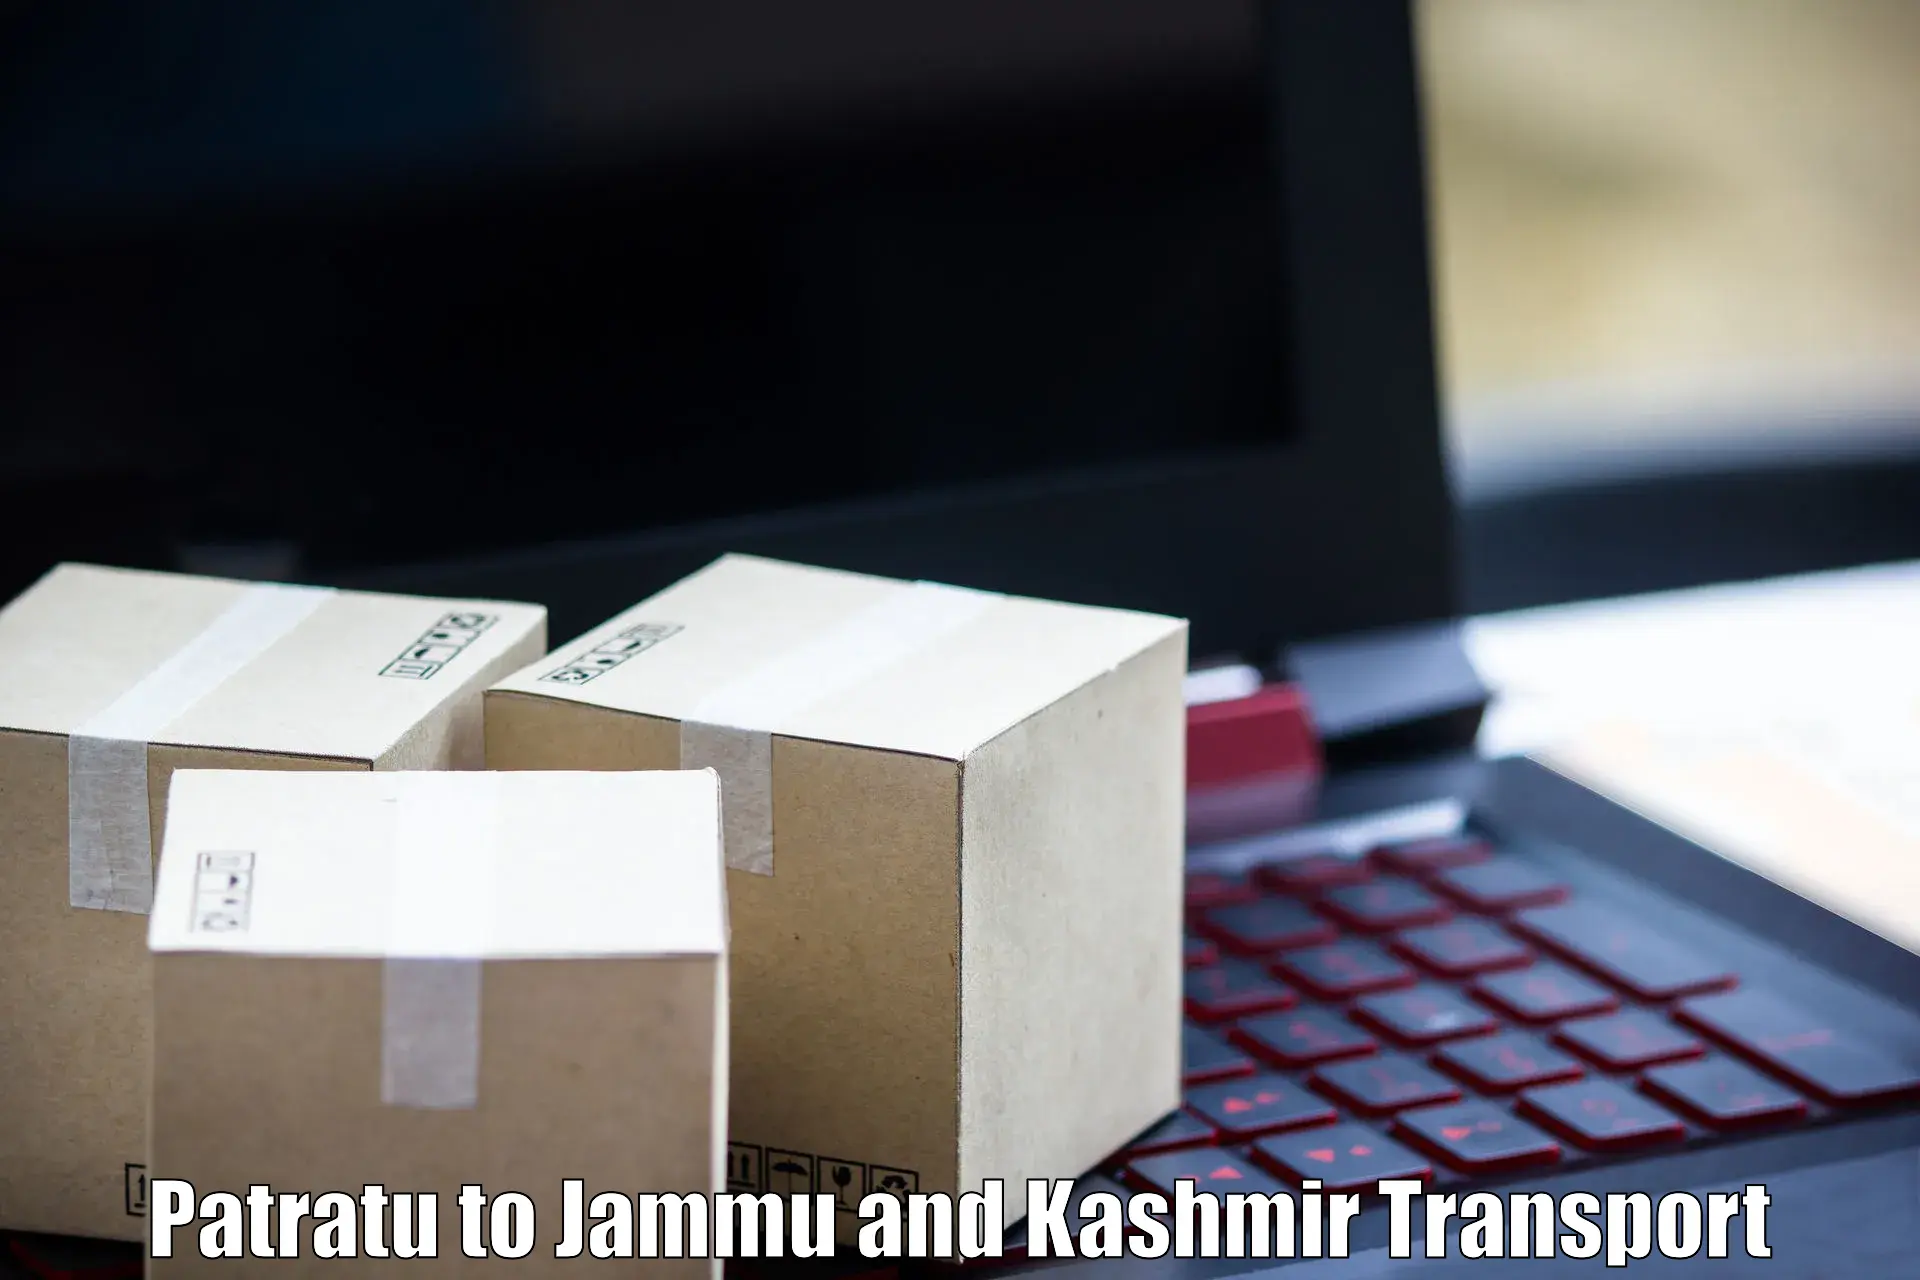 Pick up transport service Patratu to Srinagar Kashmir